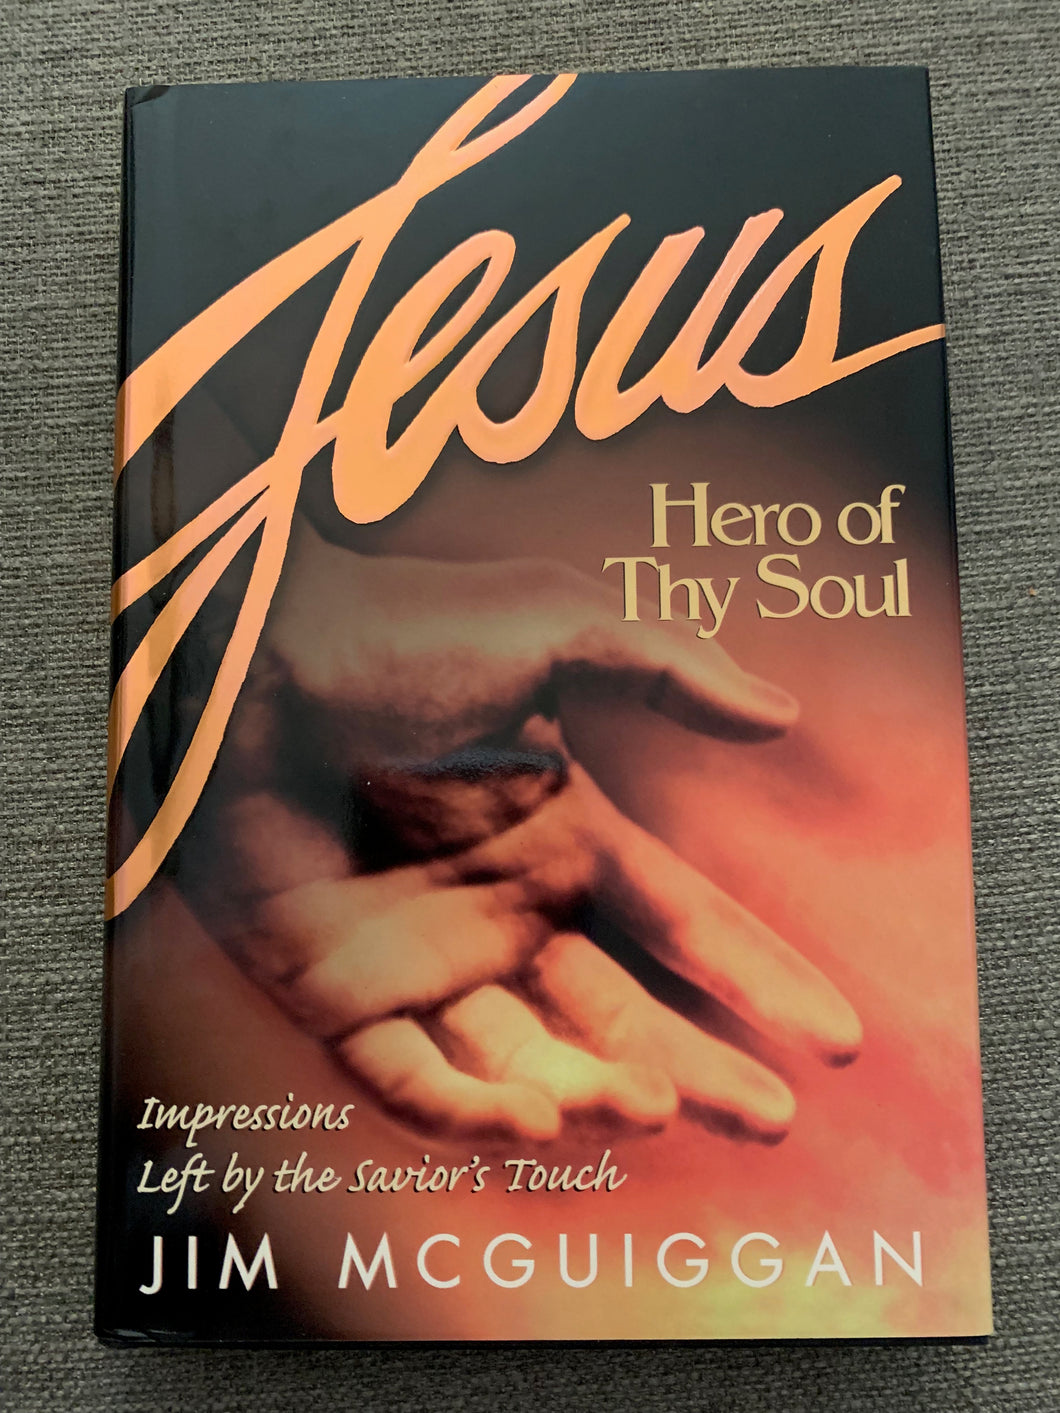 Jesus: Hero of Thy Soul by Jim Mcguiggan